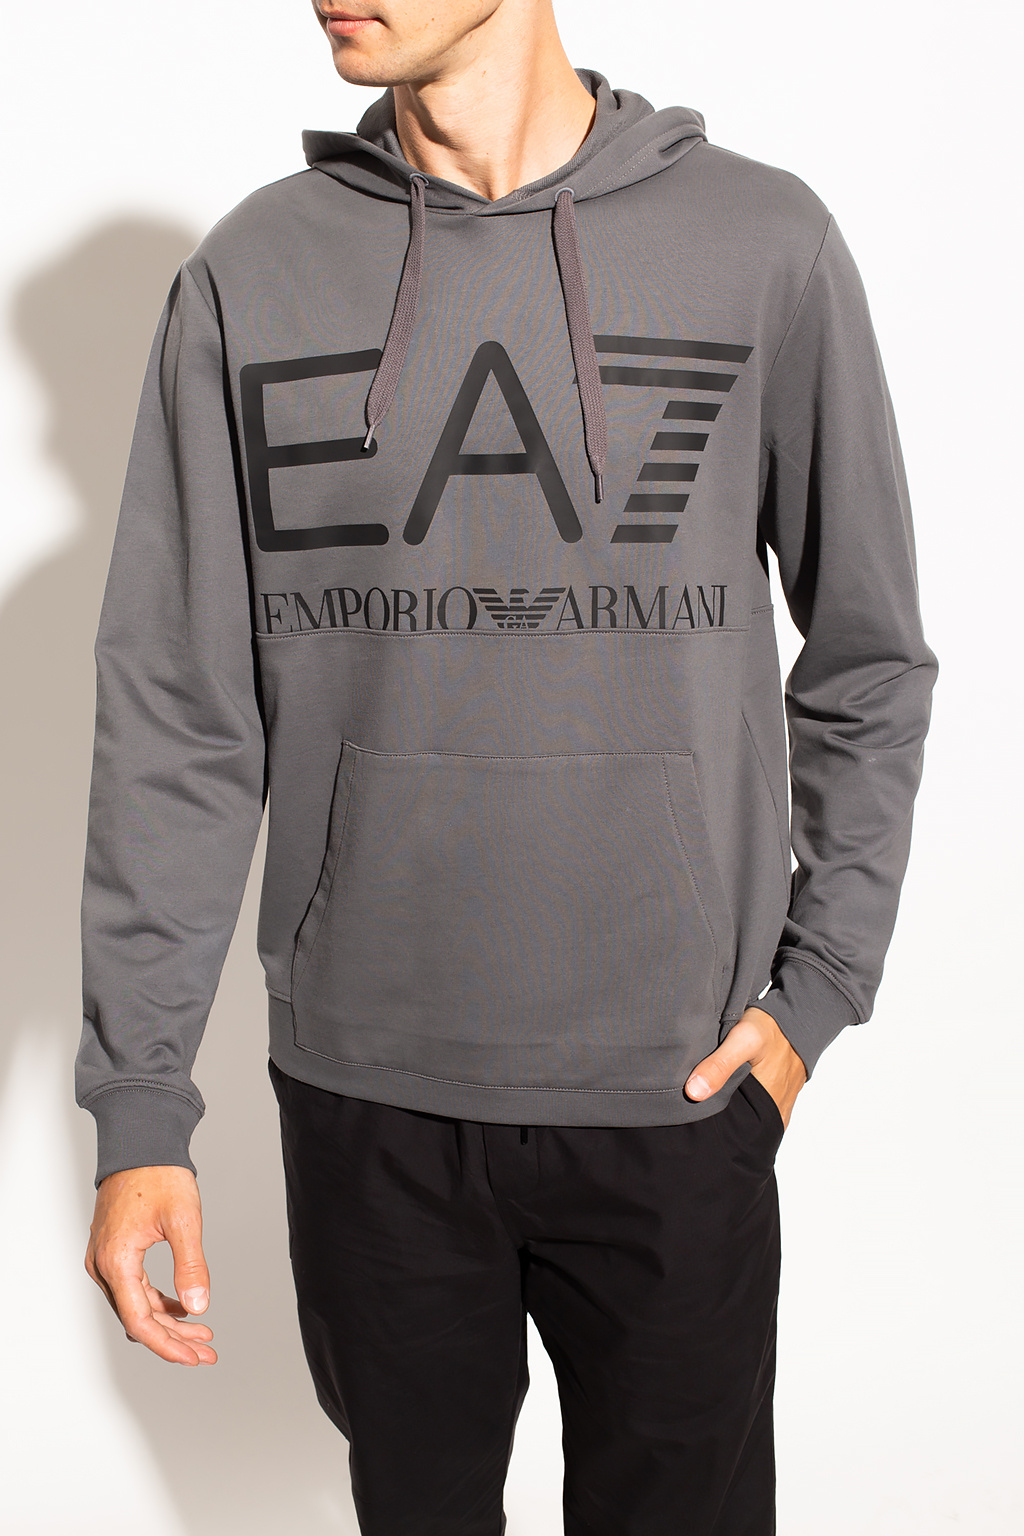 EA7 Emporio Armani with logo | Men's Clothing | Vitkac